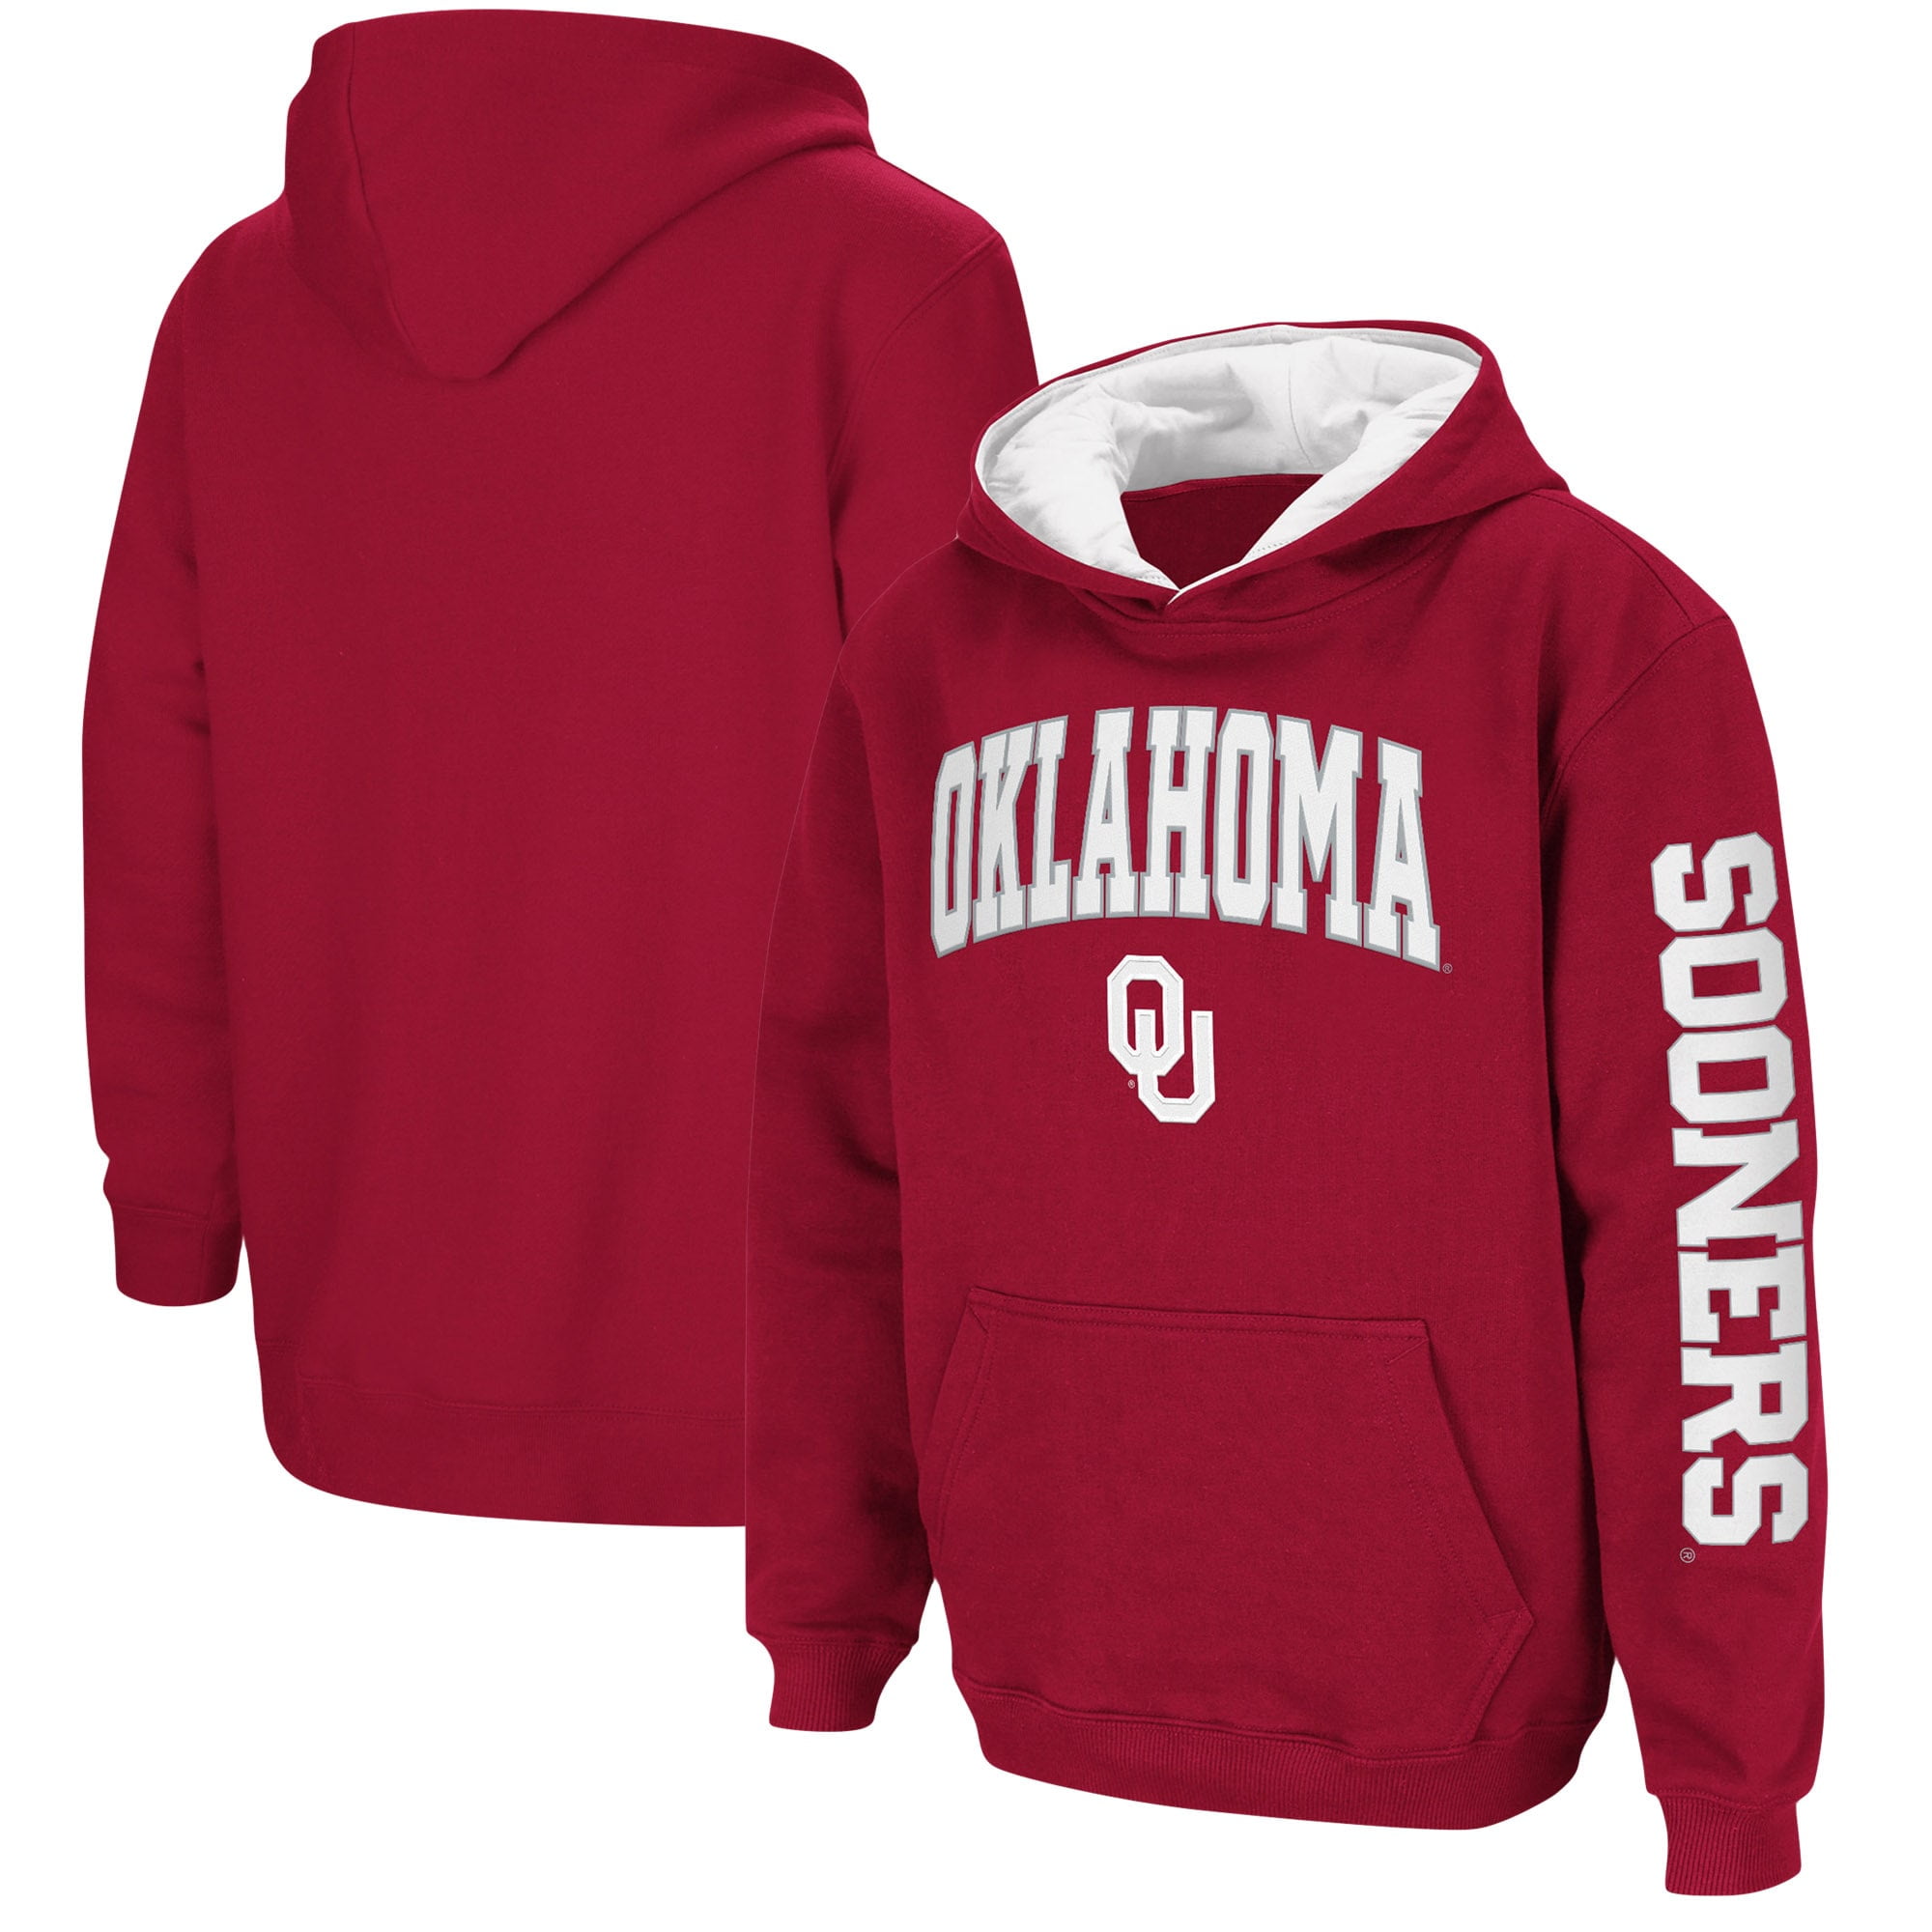 Oklahoma Sooners Jersey HOODIE/HOODY Sweatshirt YOUTH KIDS BOYS $40 xl 